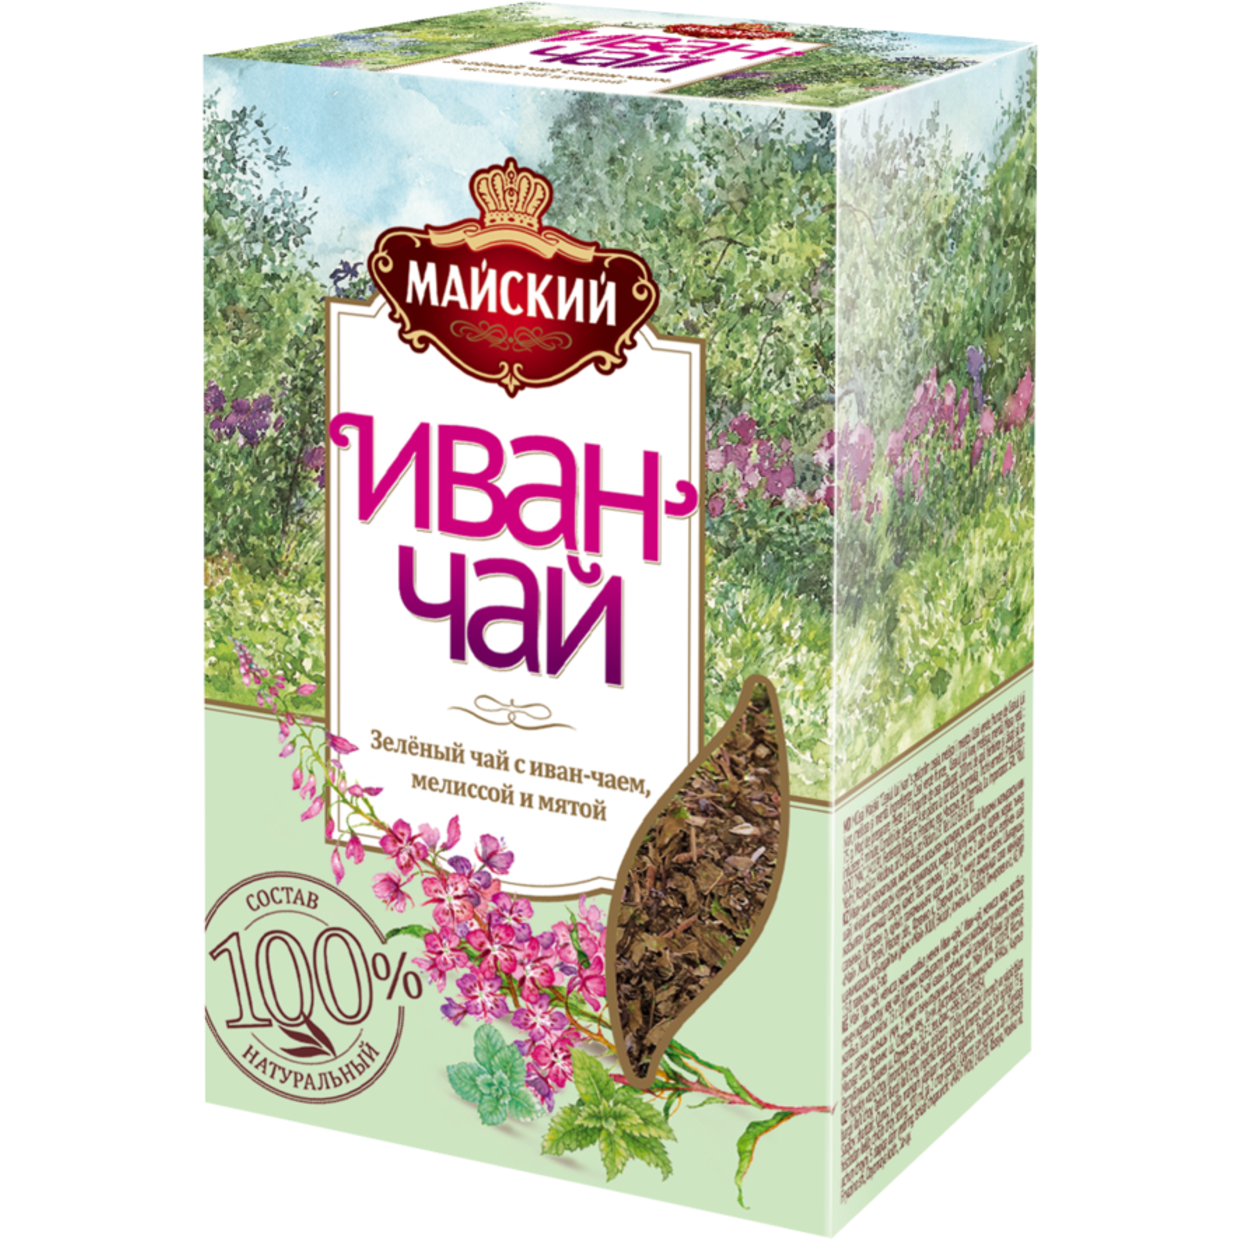 МАЙСК.Чай ИВАН-ЧАЙ зел.мел/мят.лист.75г